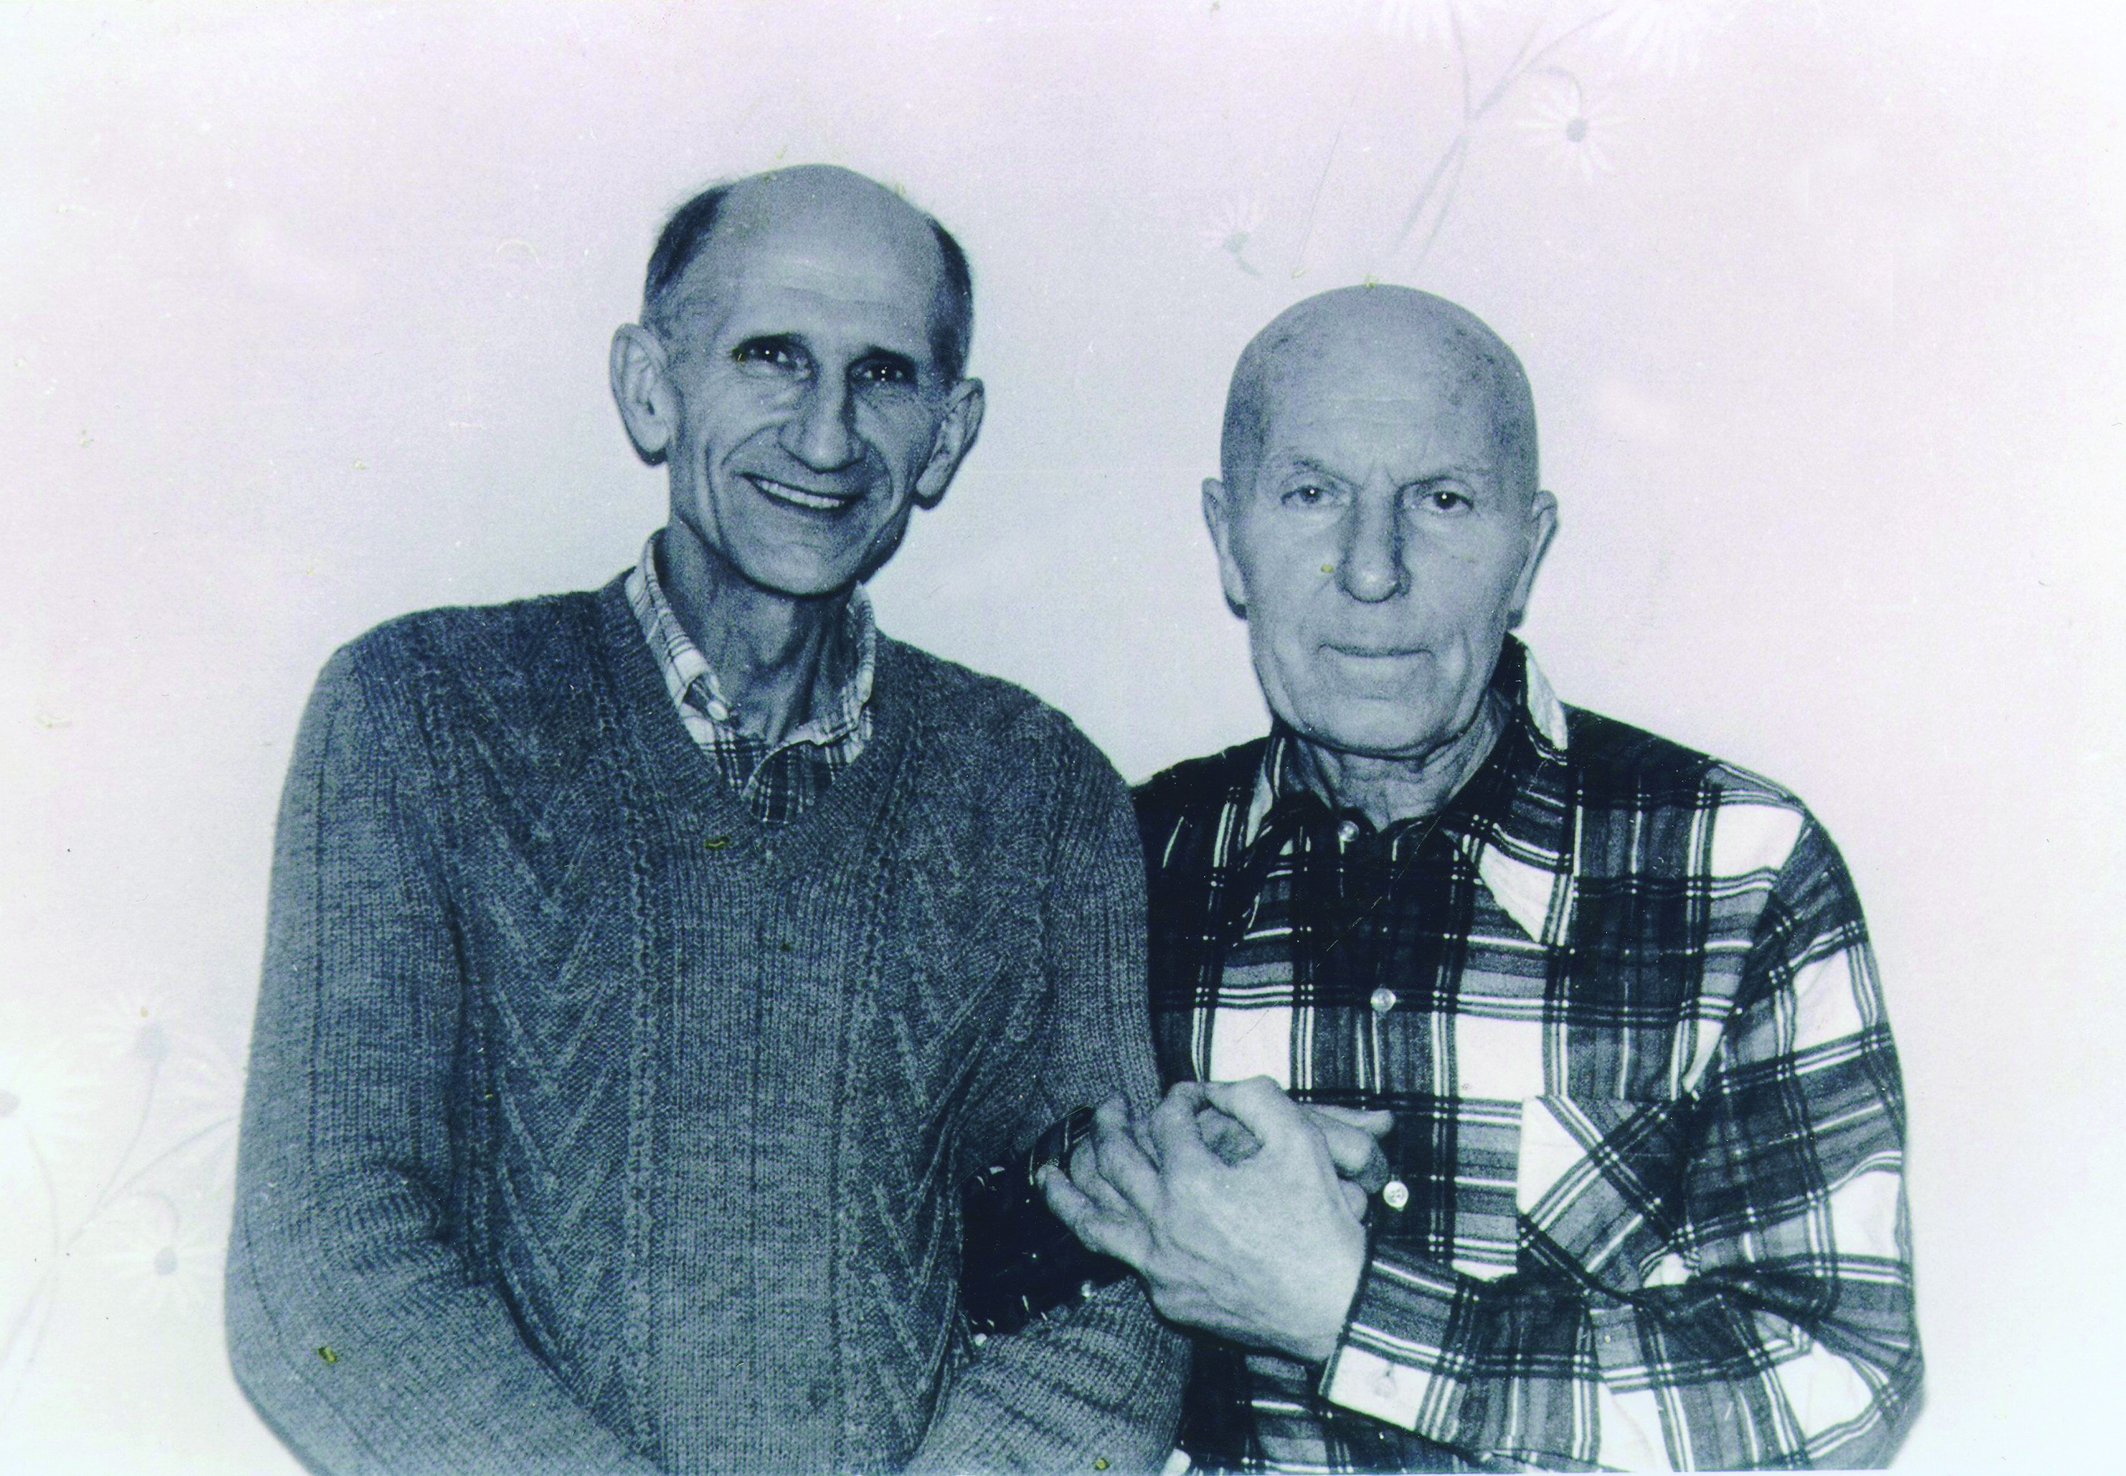 Buvęs politinis kalinys P. Butkevičius (iš kairės) lanko ką tik iš lagerio grįžusį politinį kalinį, legendinį rezistentą Petrą Paulaitį. Kretinga, 1983 m. | Lietuvos ypatingojo archyvo nuotr.